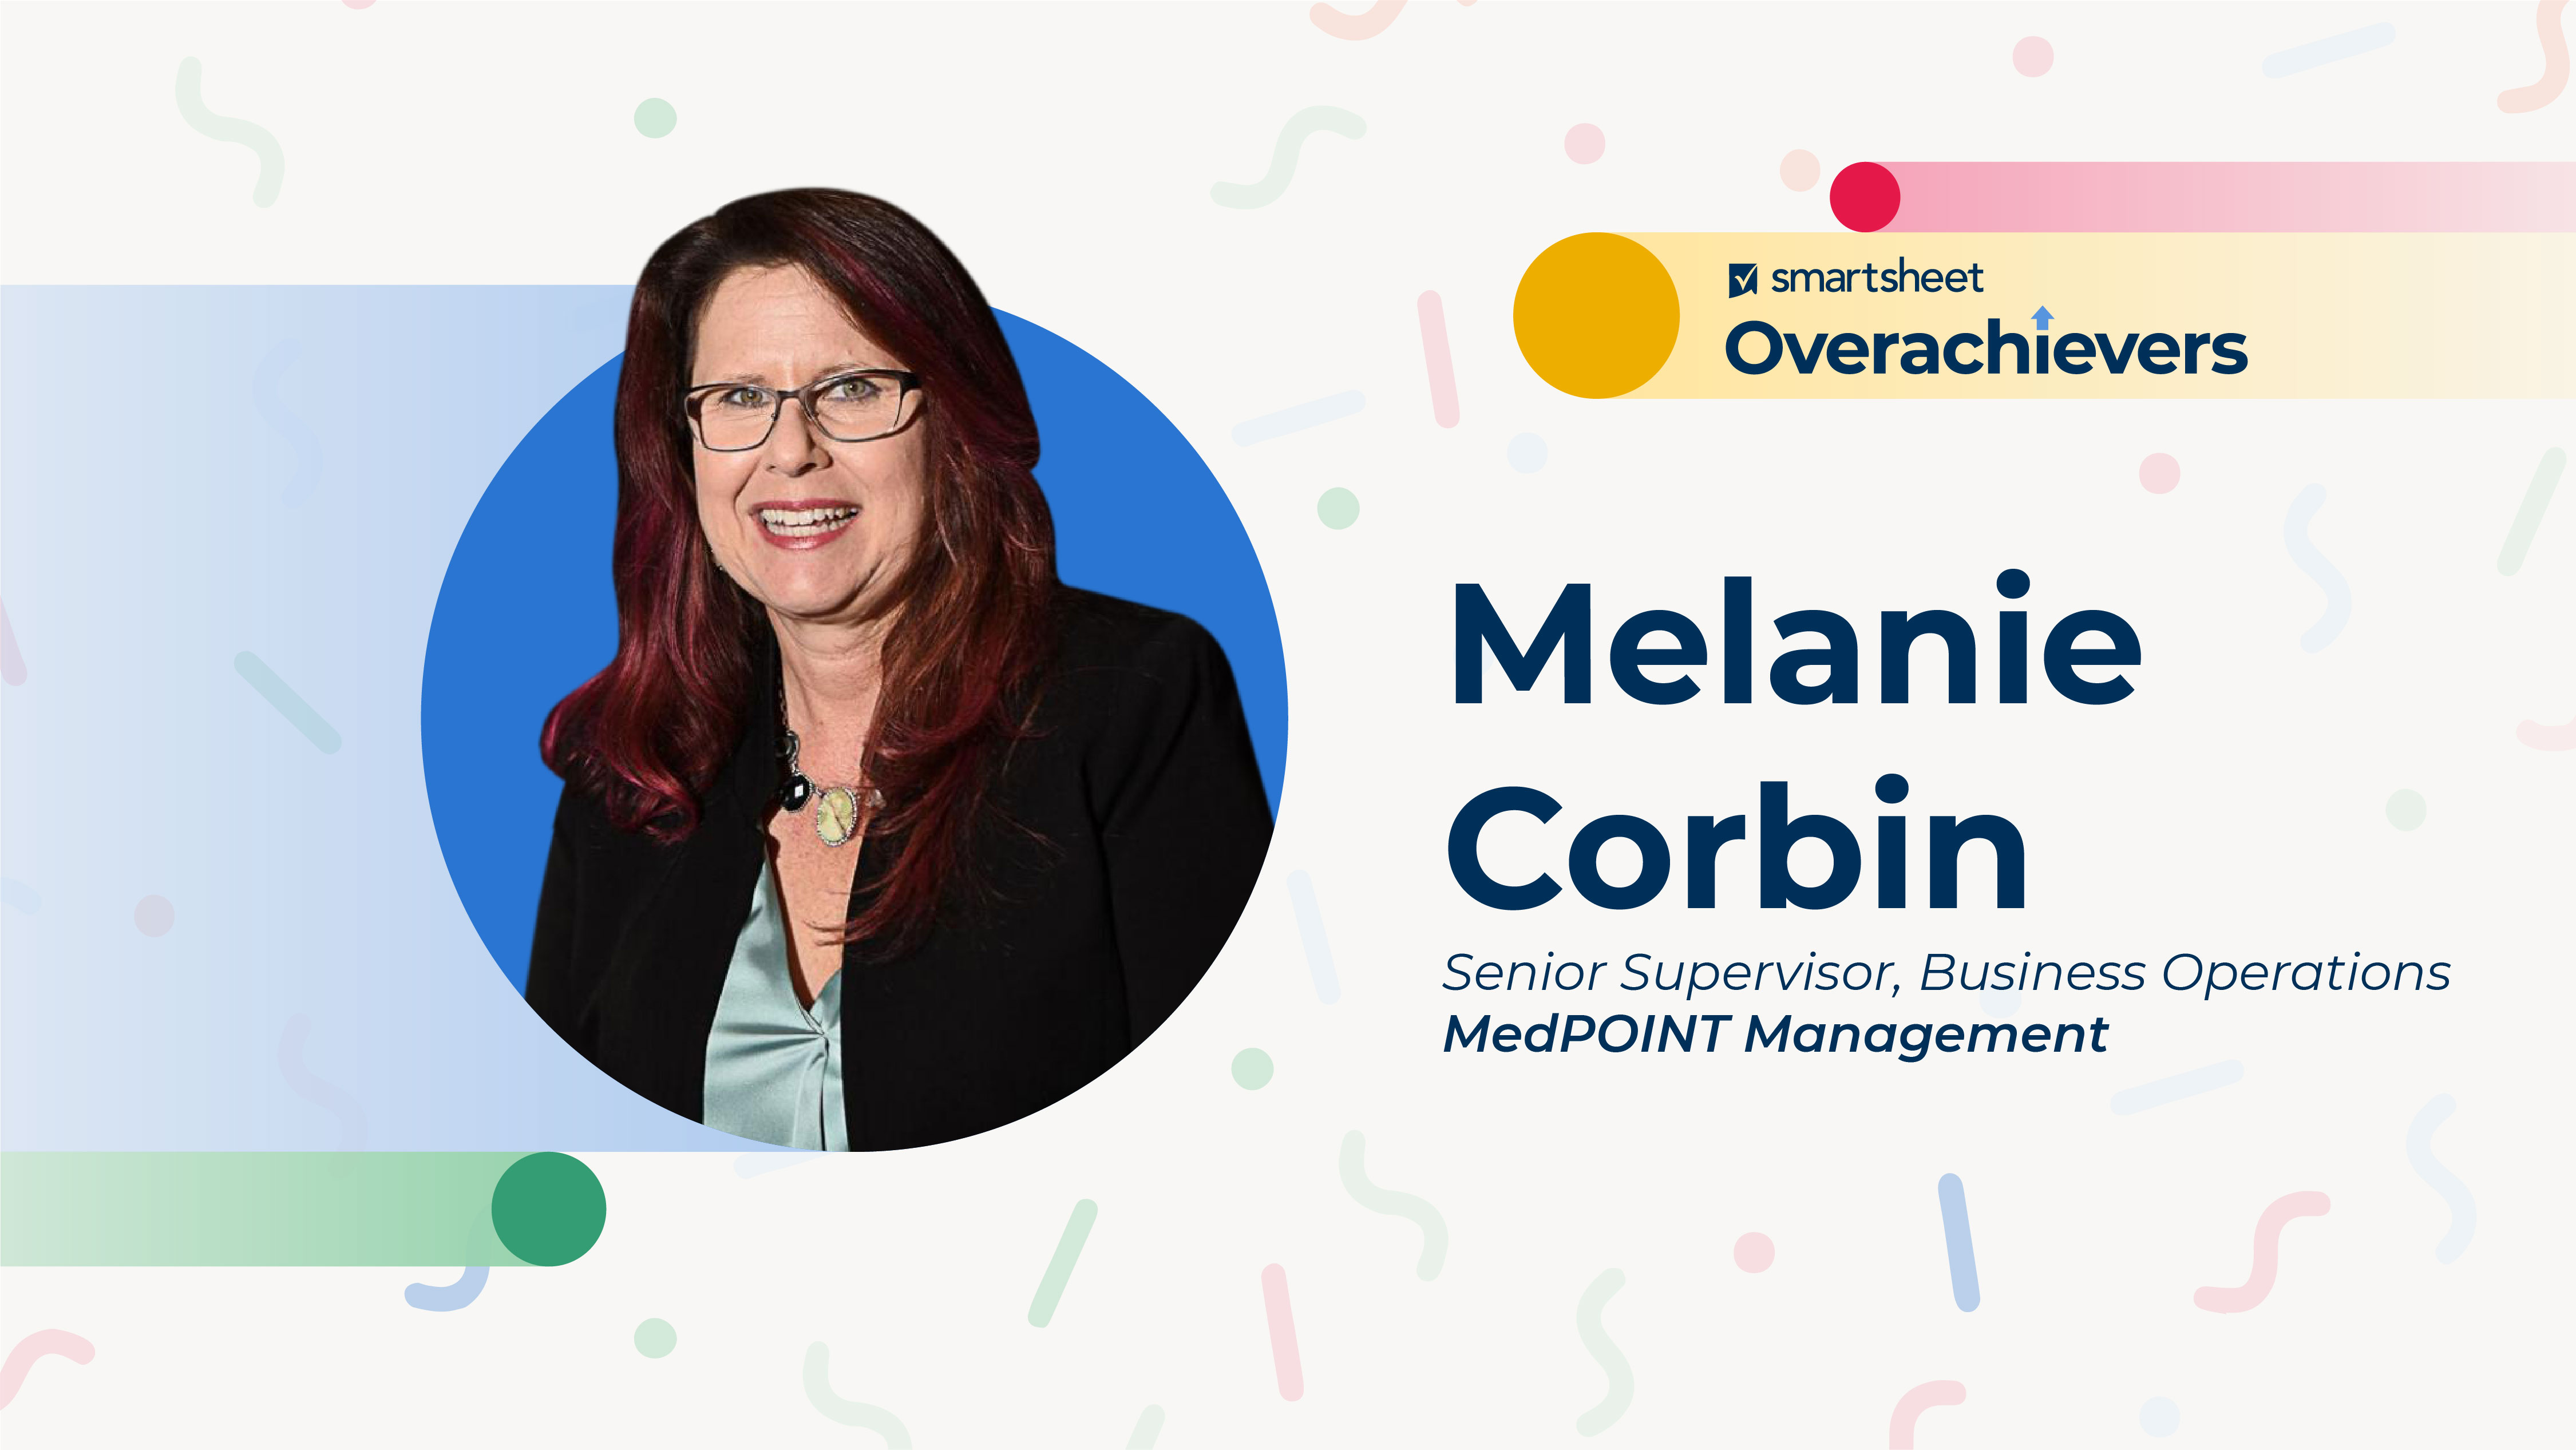 Melanie Corbin, senior supervisor of business operations at MedPOINT Management